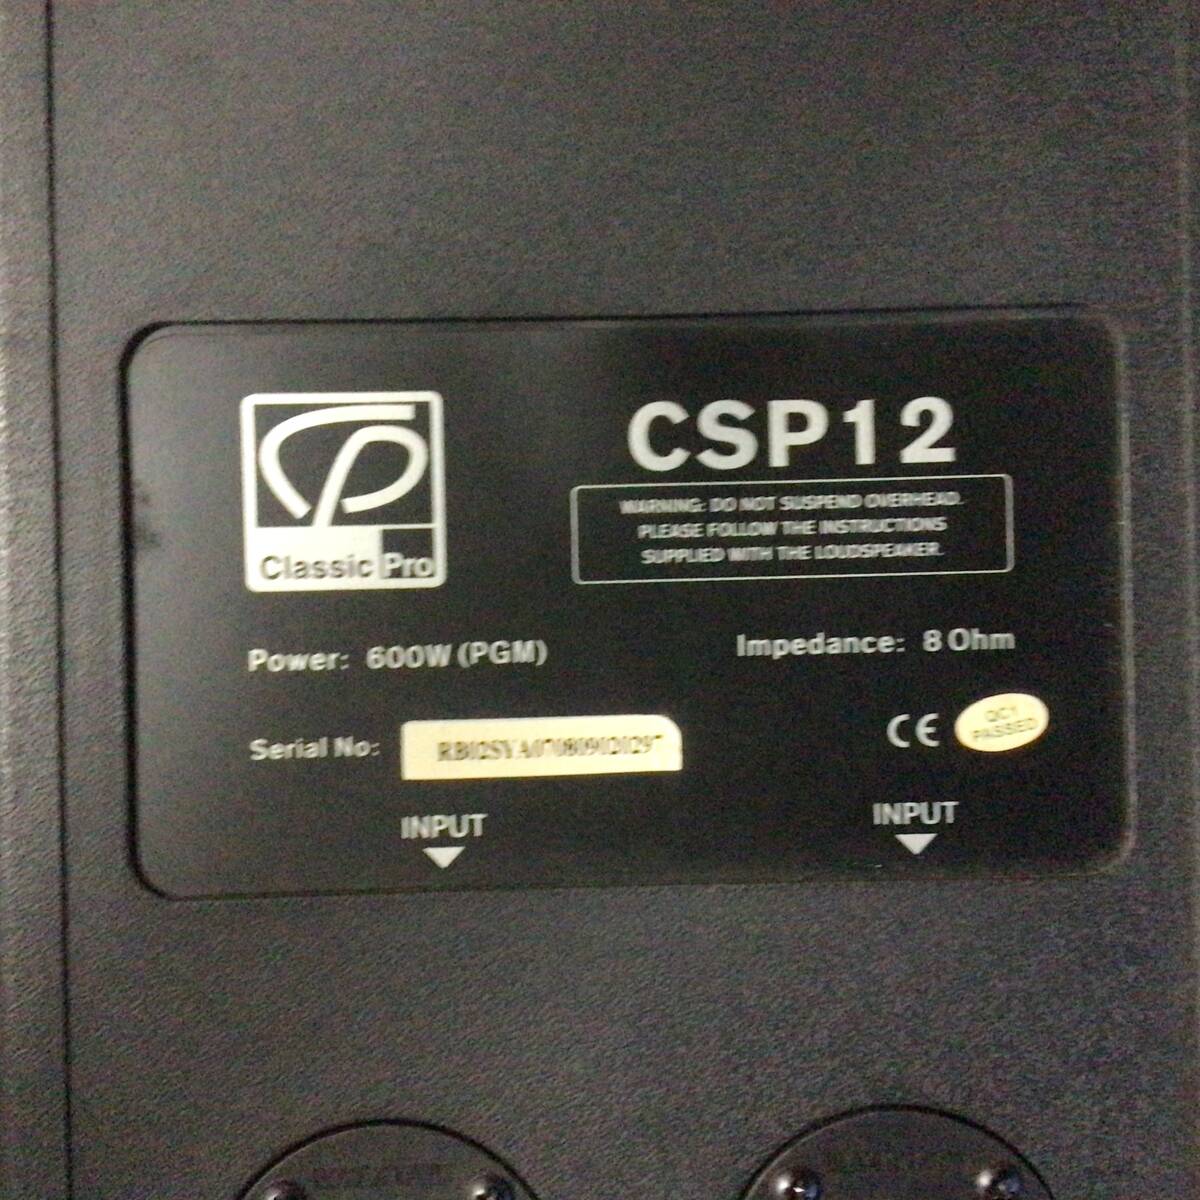 クラッシック プロ スピーカーCSP12の画像4